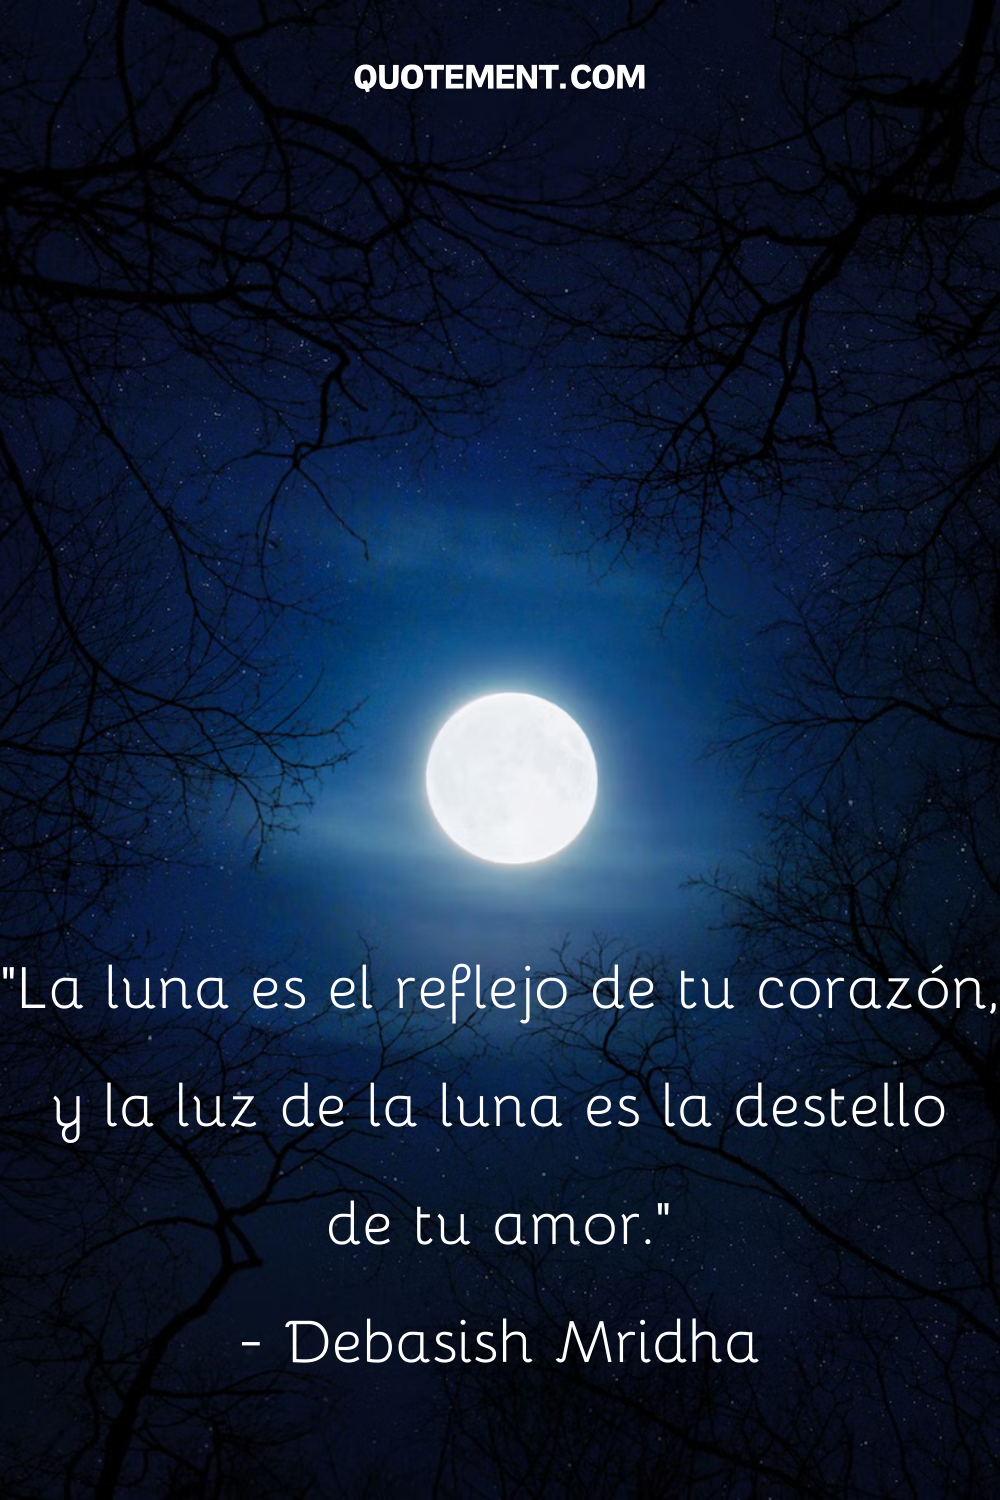 "La luna es el reflejo de tu corazón, y la luz de la luna es el brillo de tu amor". - Debasish Mridha